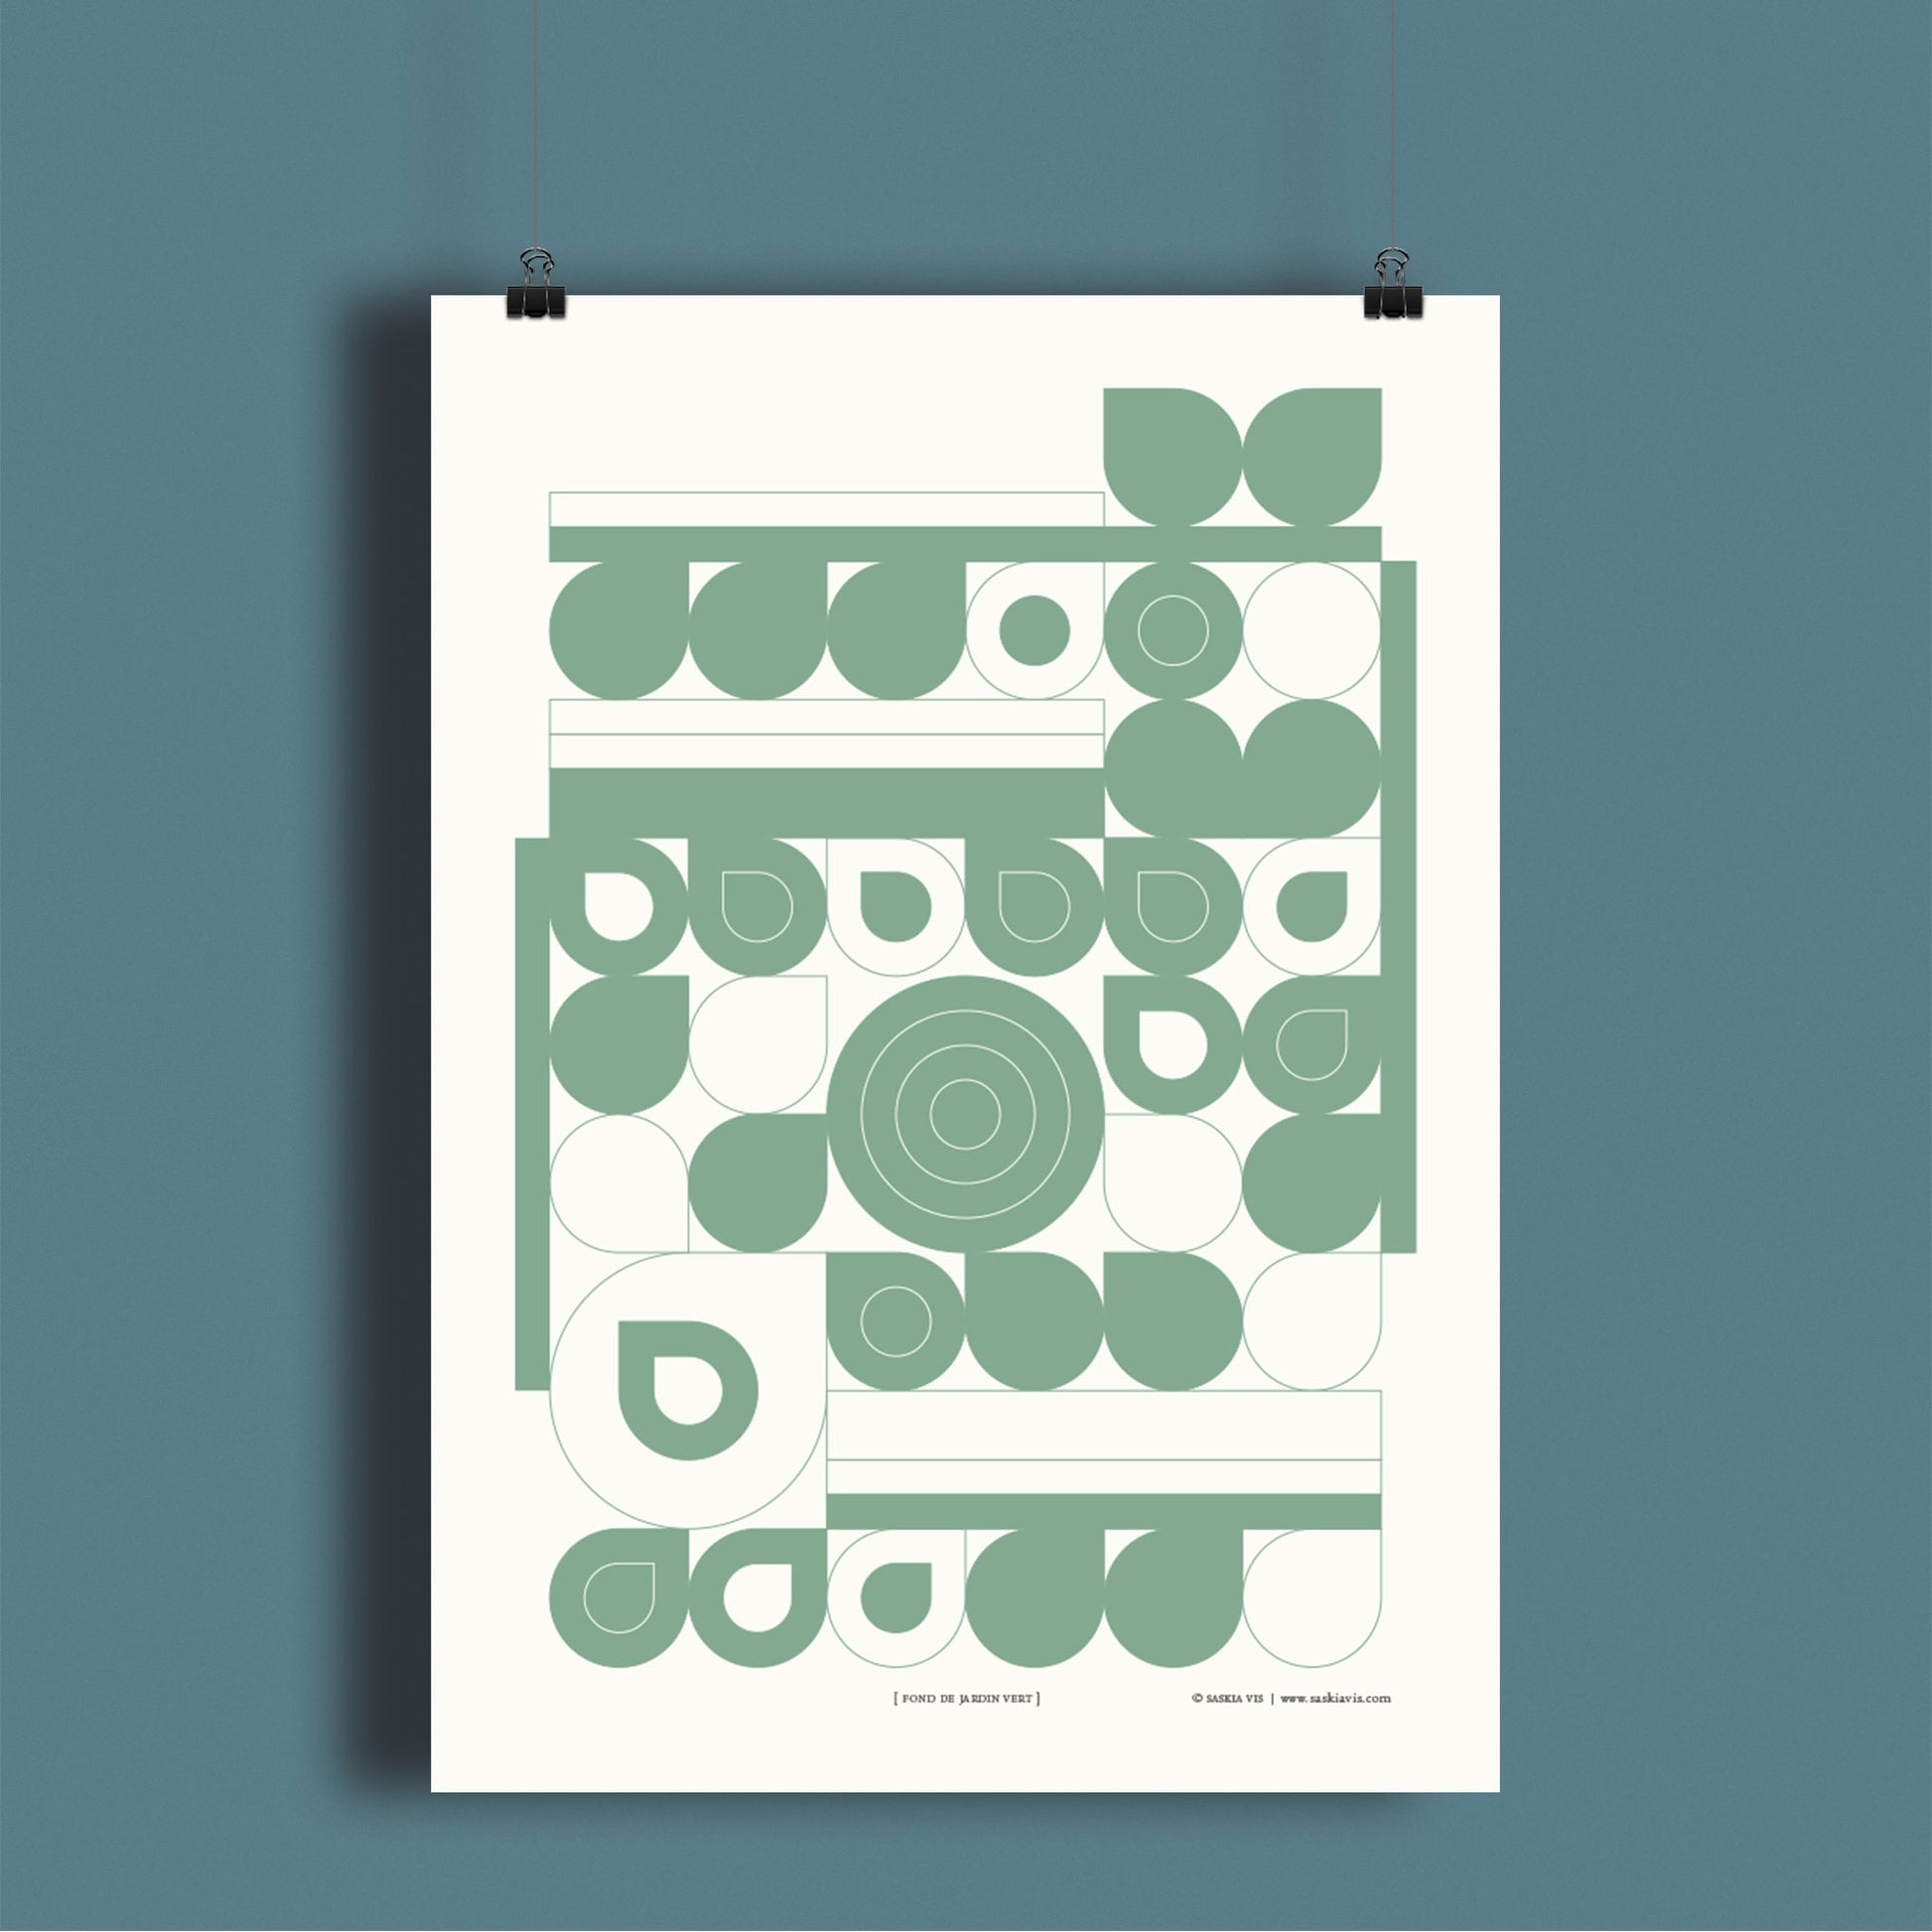 Productafbeelding, poster "fond de jardin vert", hangend aan een blauwe wand, een overzichtsfoto